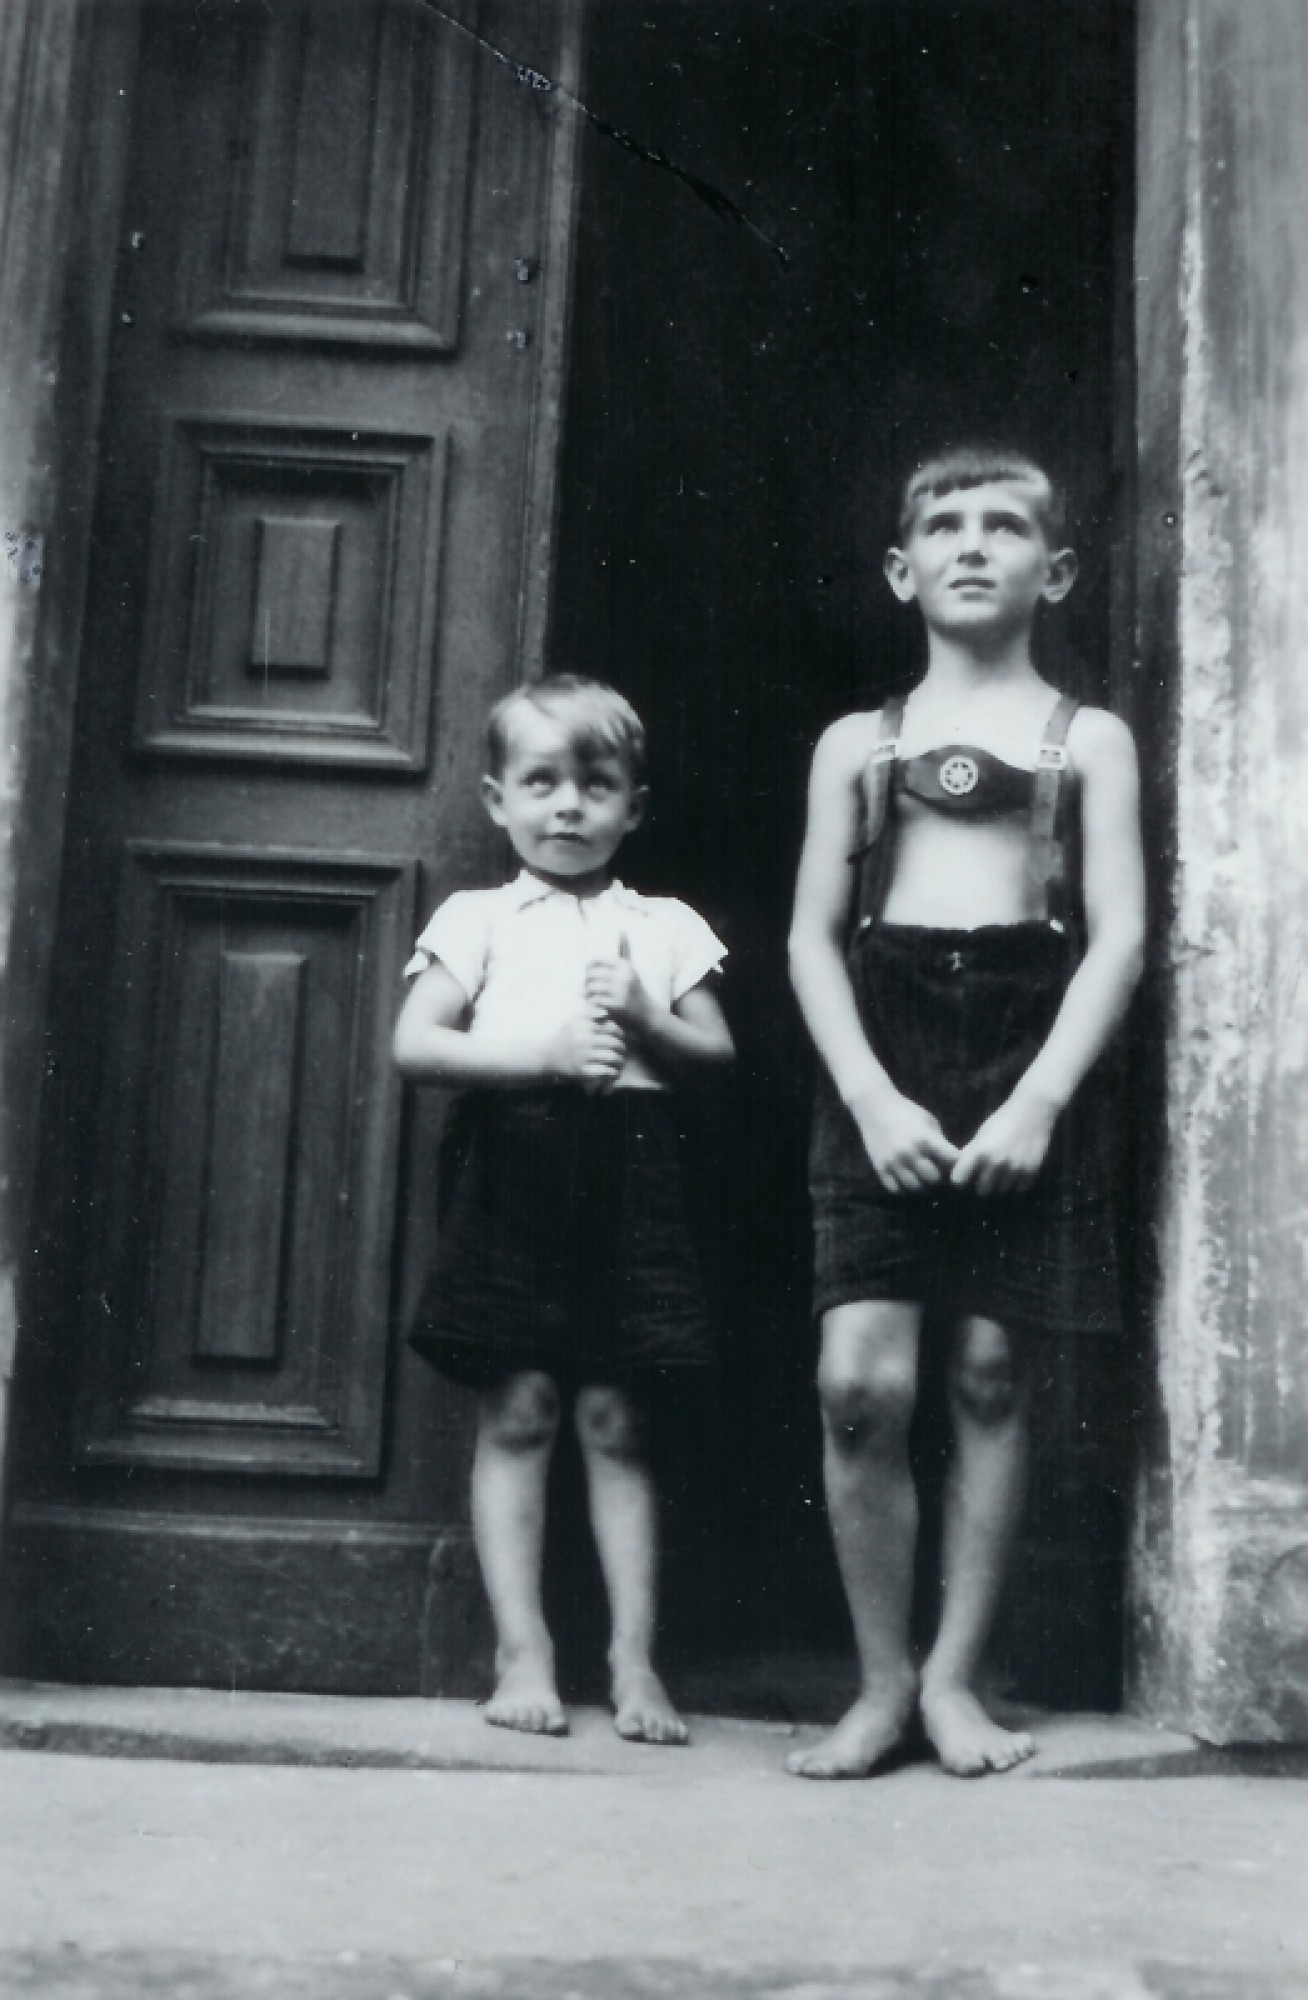 Otto Peschka s kamarádem Heinzem v Děčíně, asi rok 1940, nebo 1941